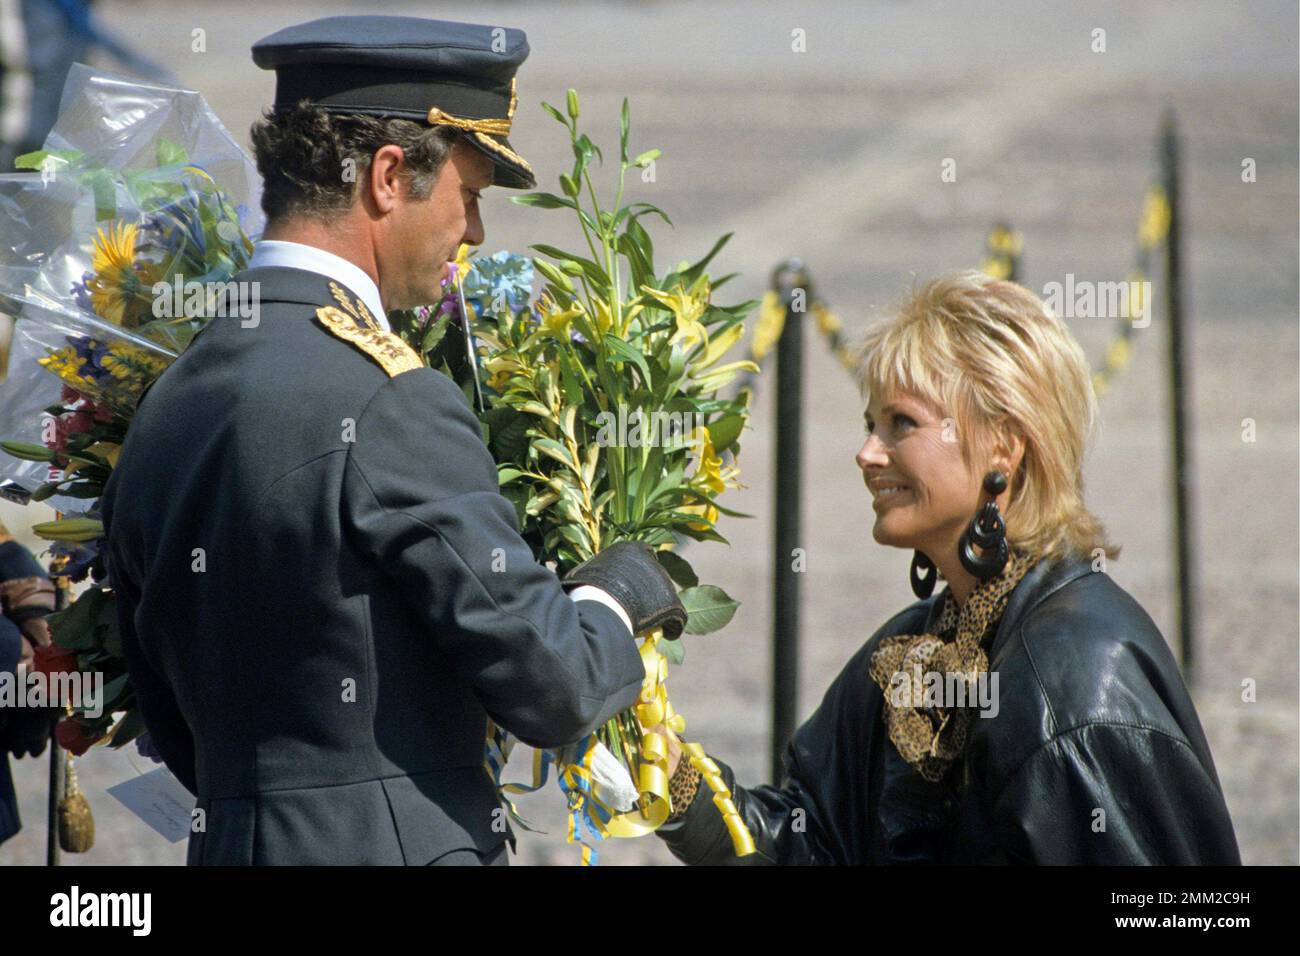 Carl XVI Gustaf, re di Svezia. Nato il 30 aprile 1946. Il re Carl XVI Gustaf riceve un bouqet di fiori dall'attrice svedese Britt Ekland il giorno del suo 40th° compleanno 30 aprile 1986. Foto Stock